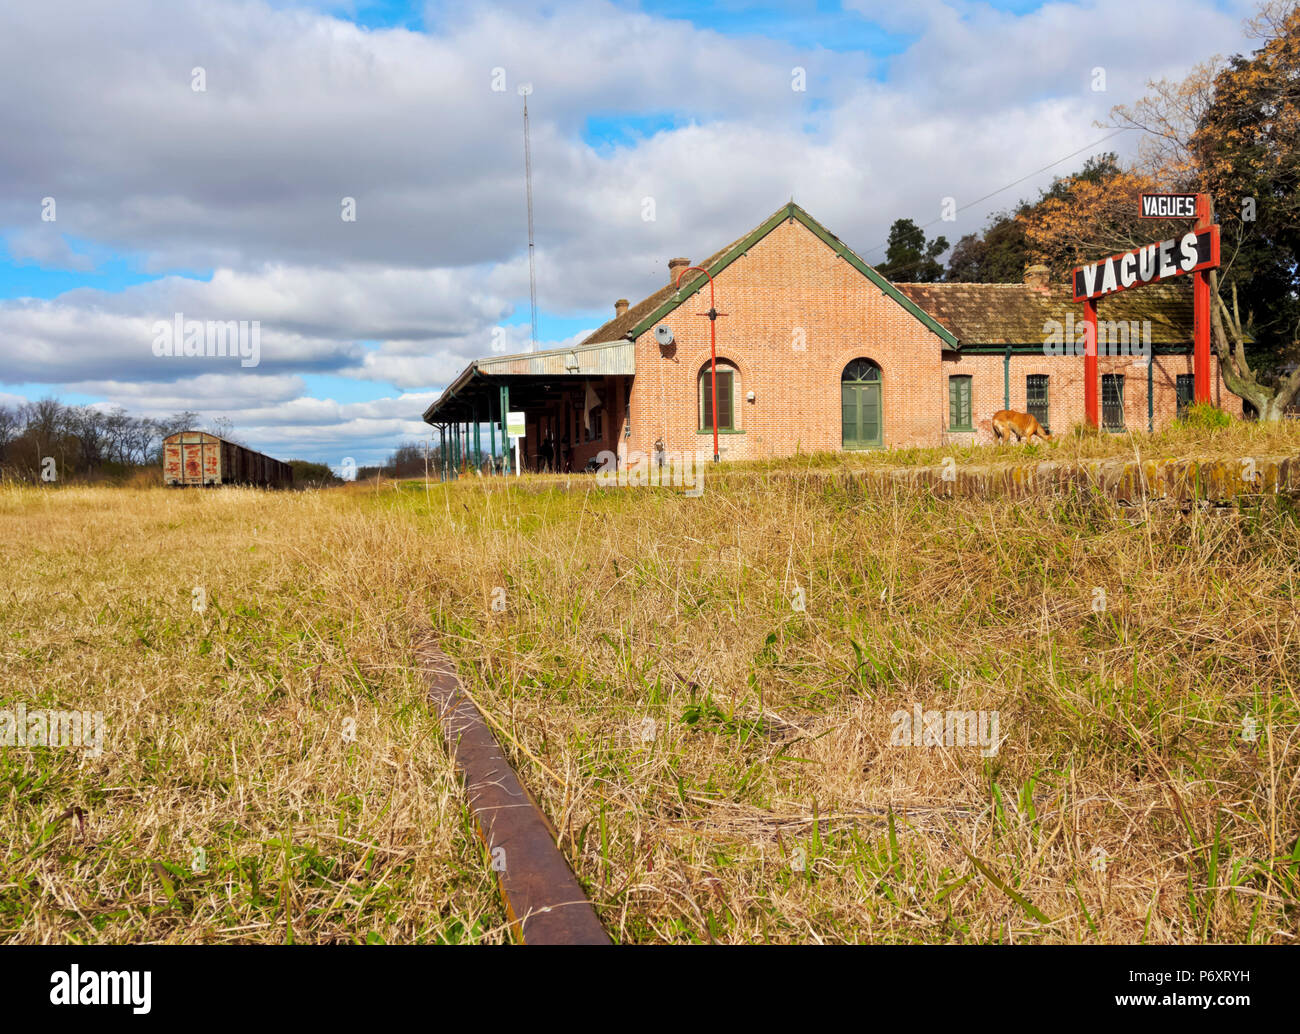 Argentinien, Provinz Buenos Aires, Vagues, Blick auf die geschlossene Tran-Station, jetzt Eisenbahnmuseum. Stockfoto